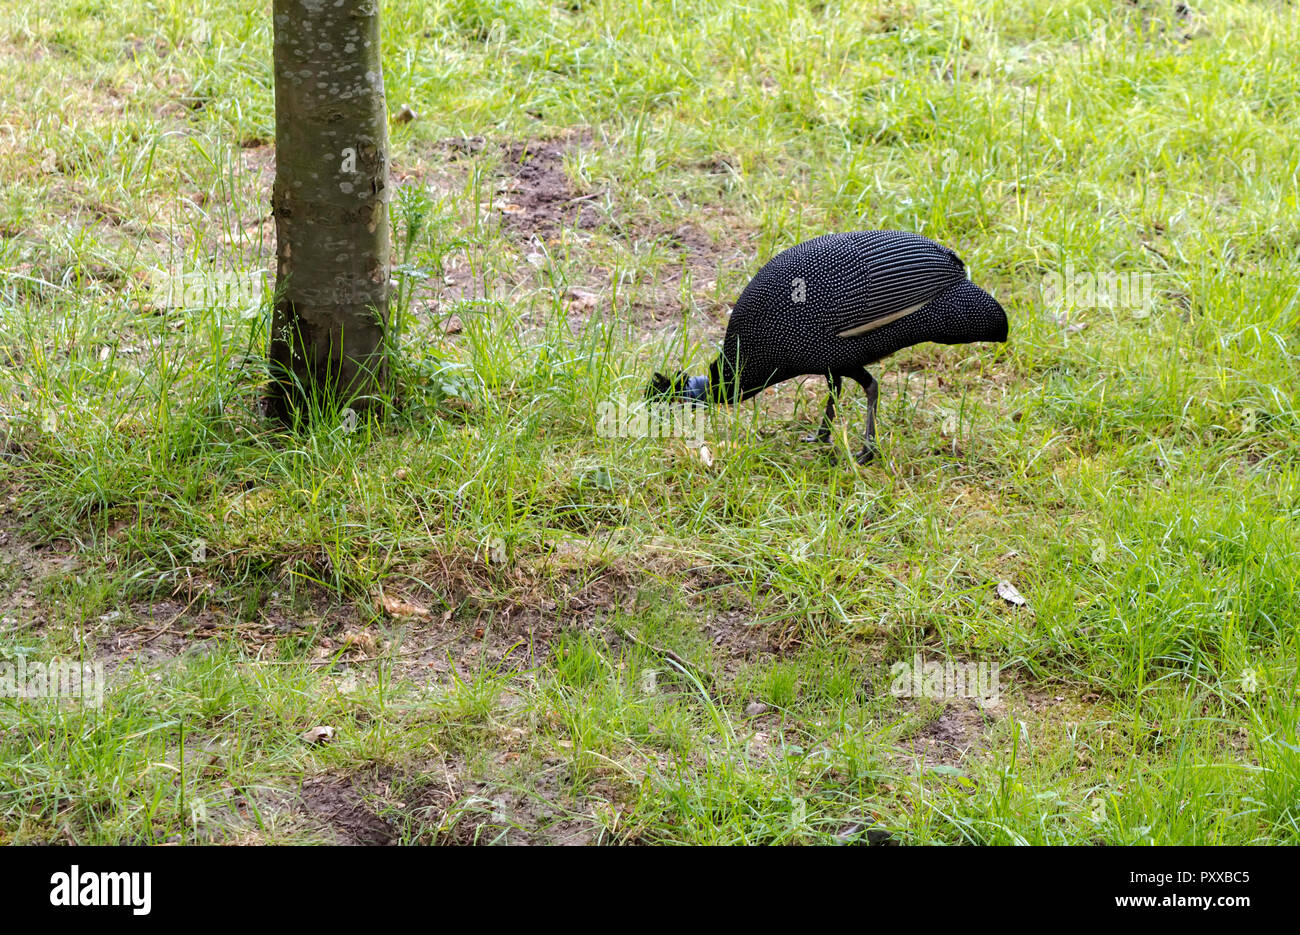 Die Crested guineafowl (Guttera pucherani) Vogel auf der Suche nach Essen. Der Vogel ist schwärzlich Gefieder mit dichten weißen Flecken. Stockfoto